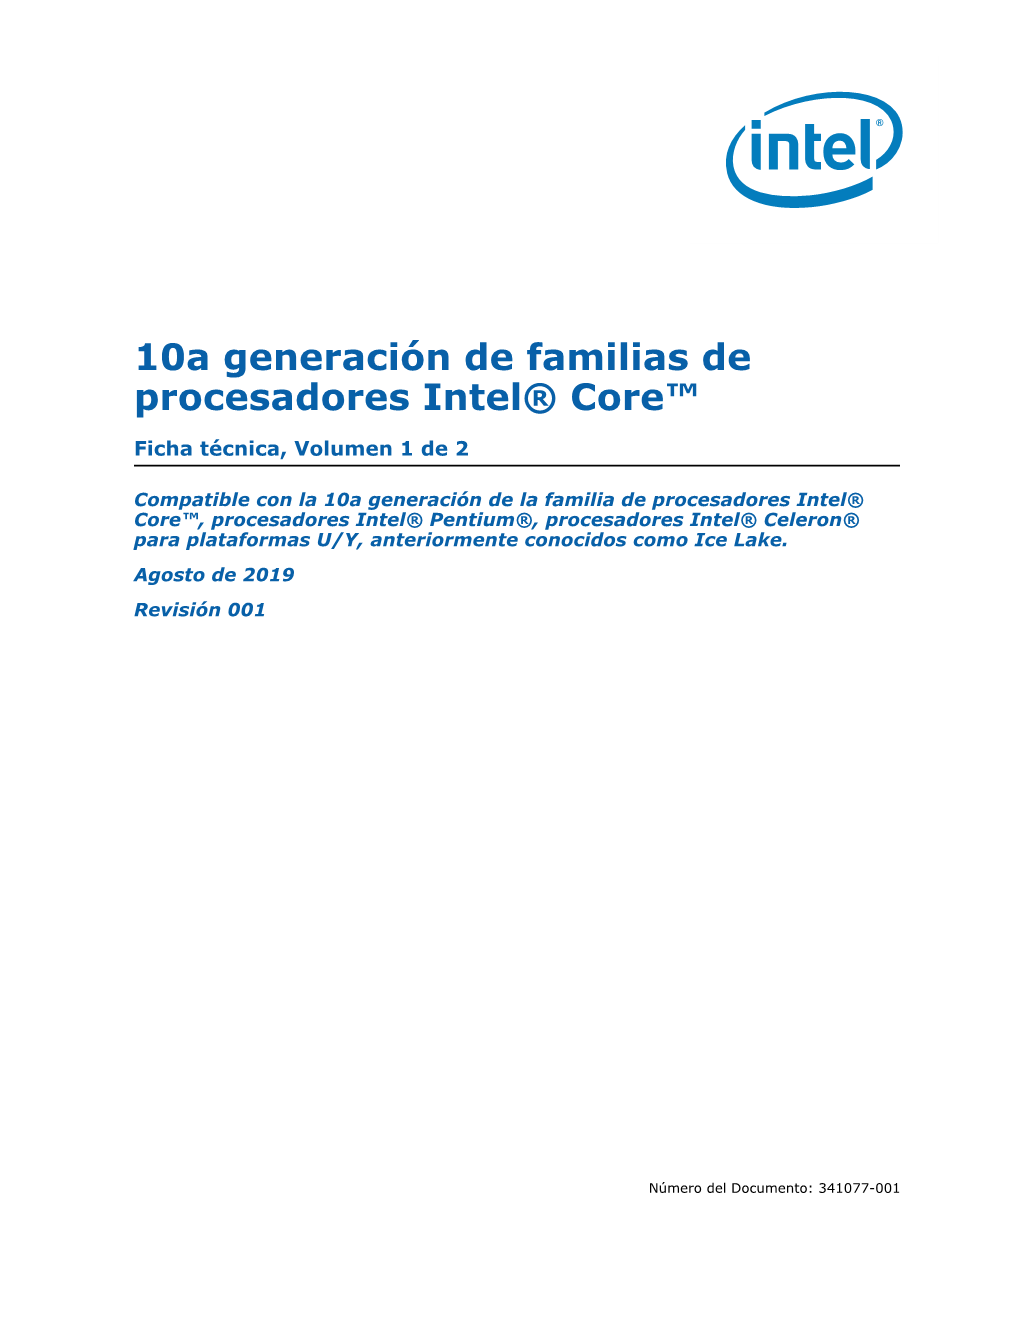 Hoja De Datos De Familes Del Procesador Intel(R) Core(TM) De 10A Generación, Vol.1